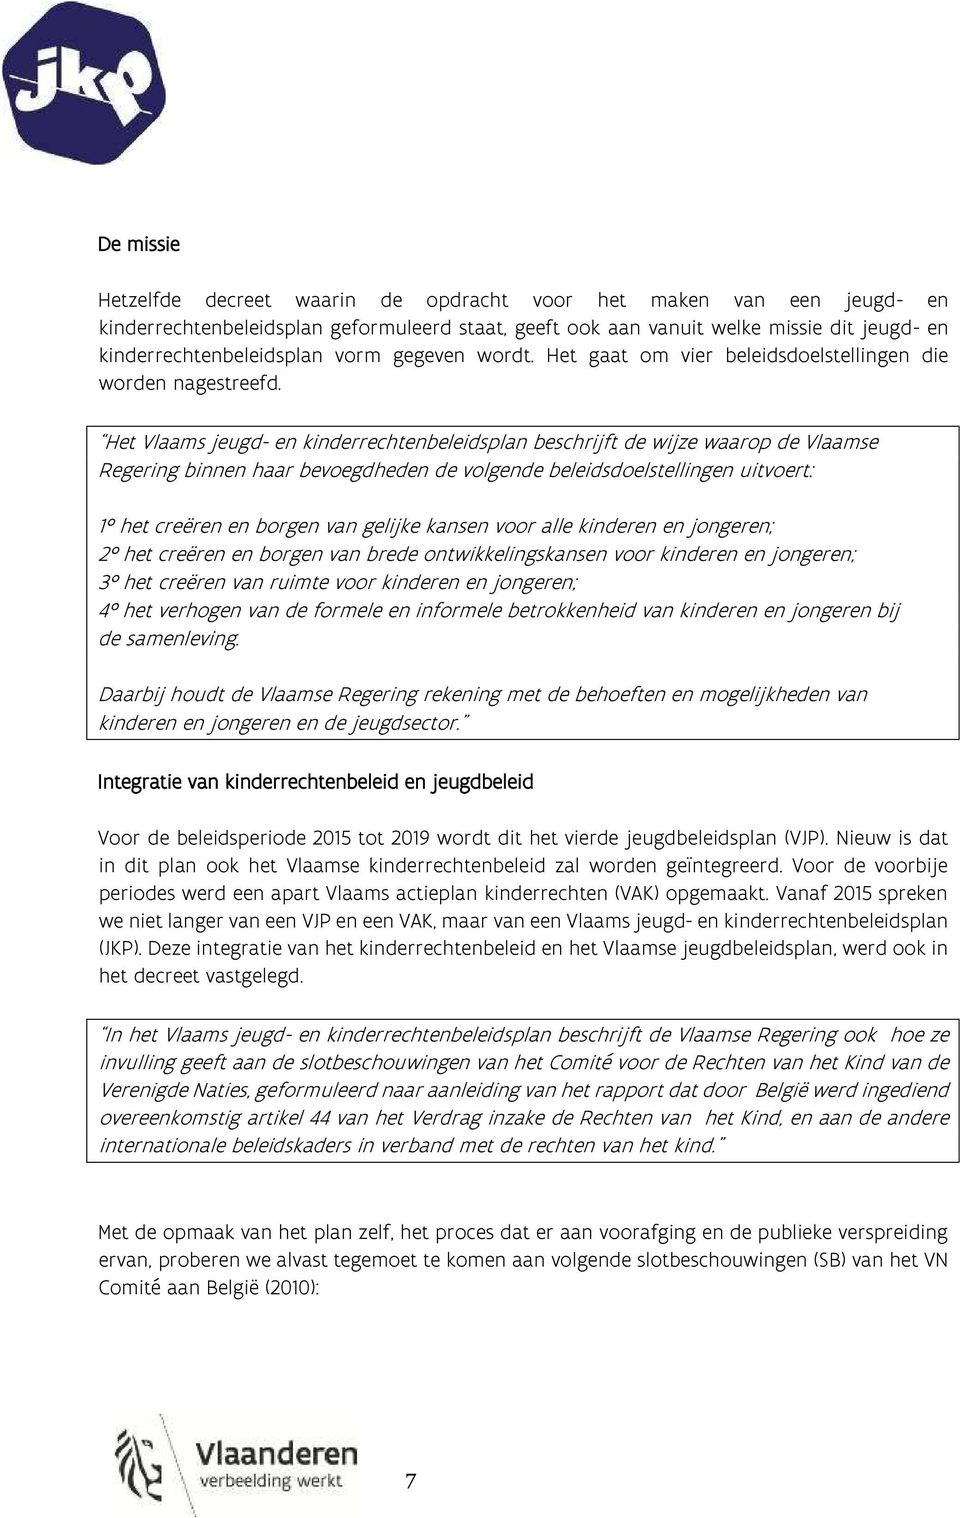 Het Vlaams jeugd- en kinderrechtenbeleidsplan beschrijft de wijze waarop de Vlaamse Regering binnen haar bevoegdheden de volgende beleidsdoelstellingen uitvoert: 1 het creëren en borgen van gelijke